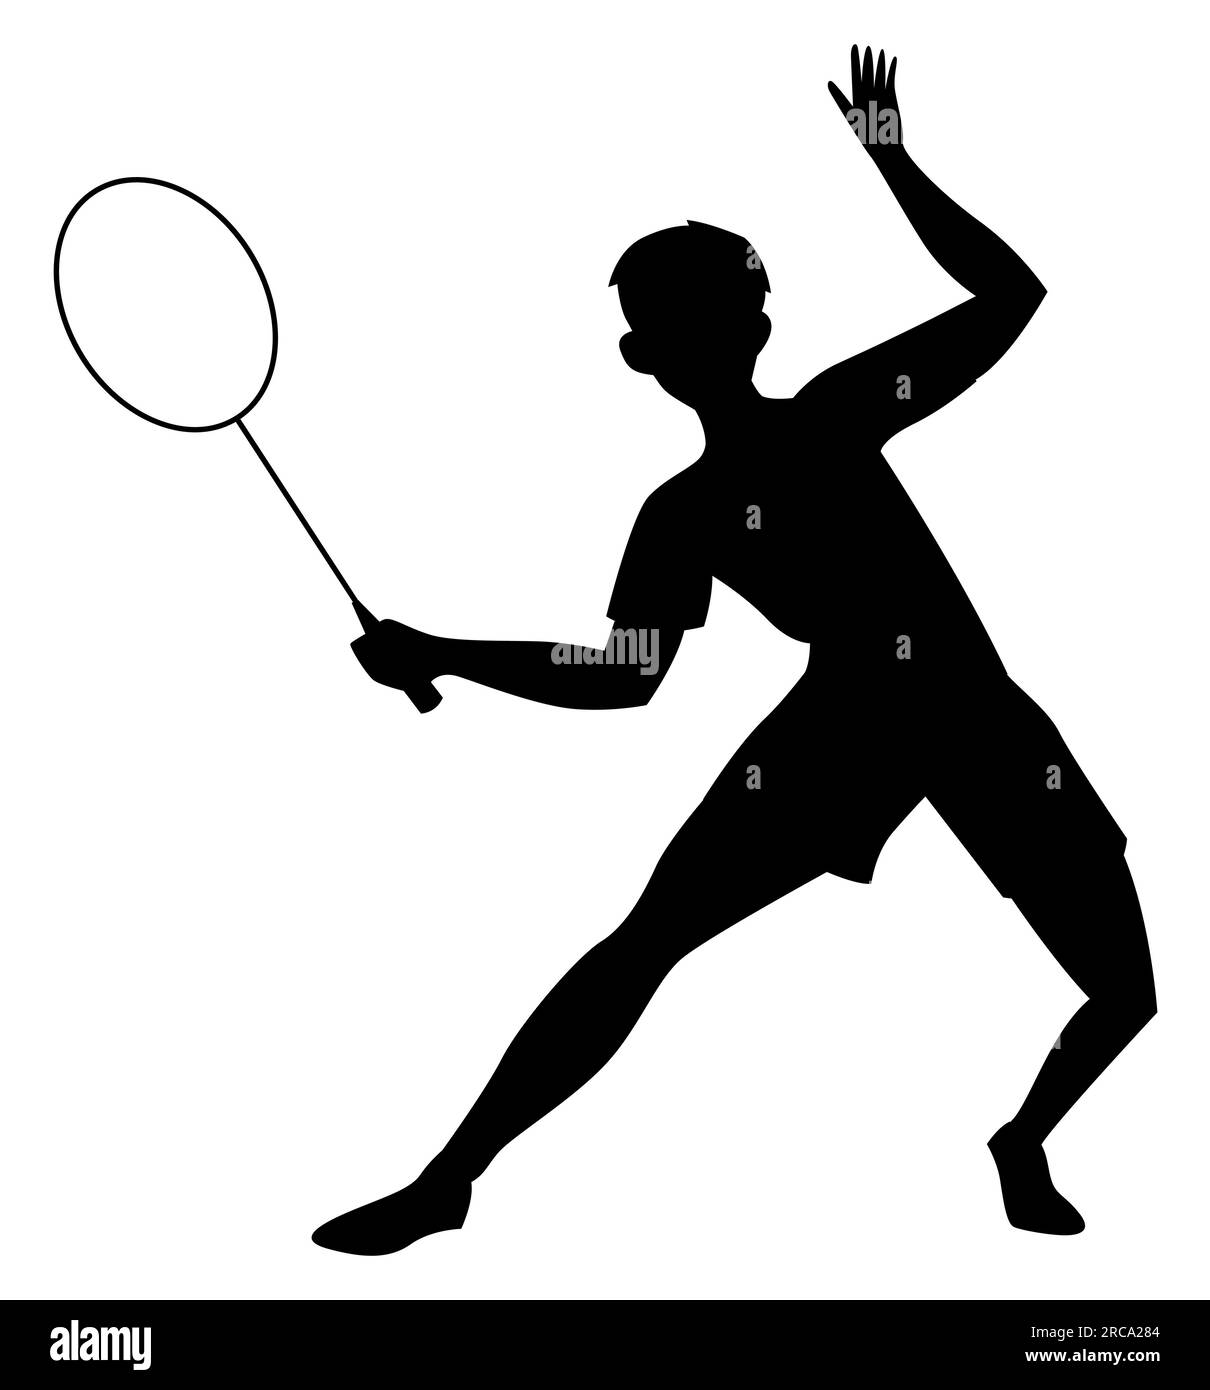 Silhouette noire d'un jeune adolescent jouant avec une raquette de tennis et une balle, illustration vectorielle isolée sur fond blanc Illustration de Vecteur